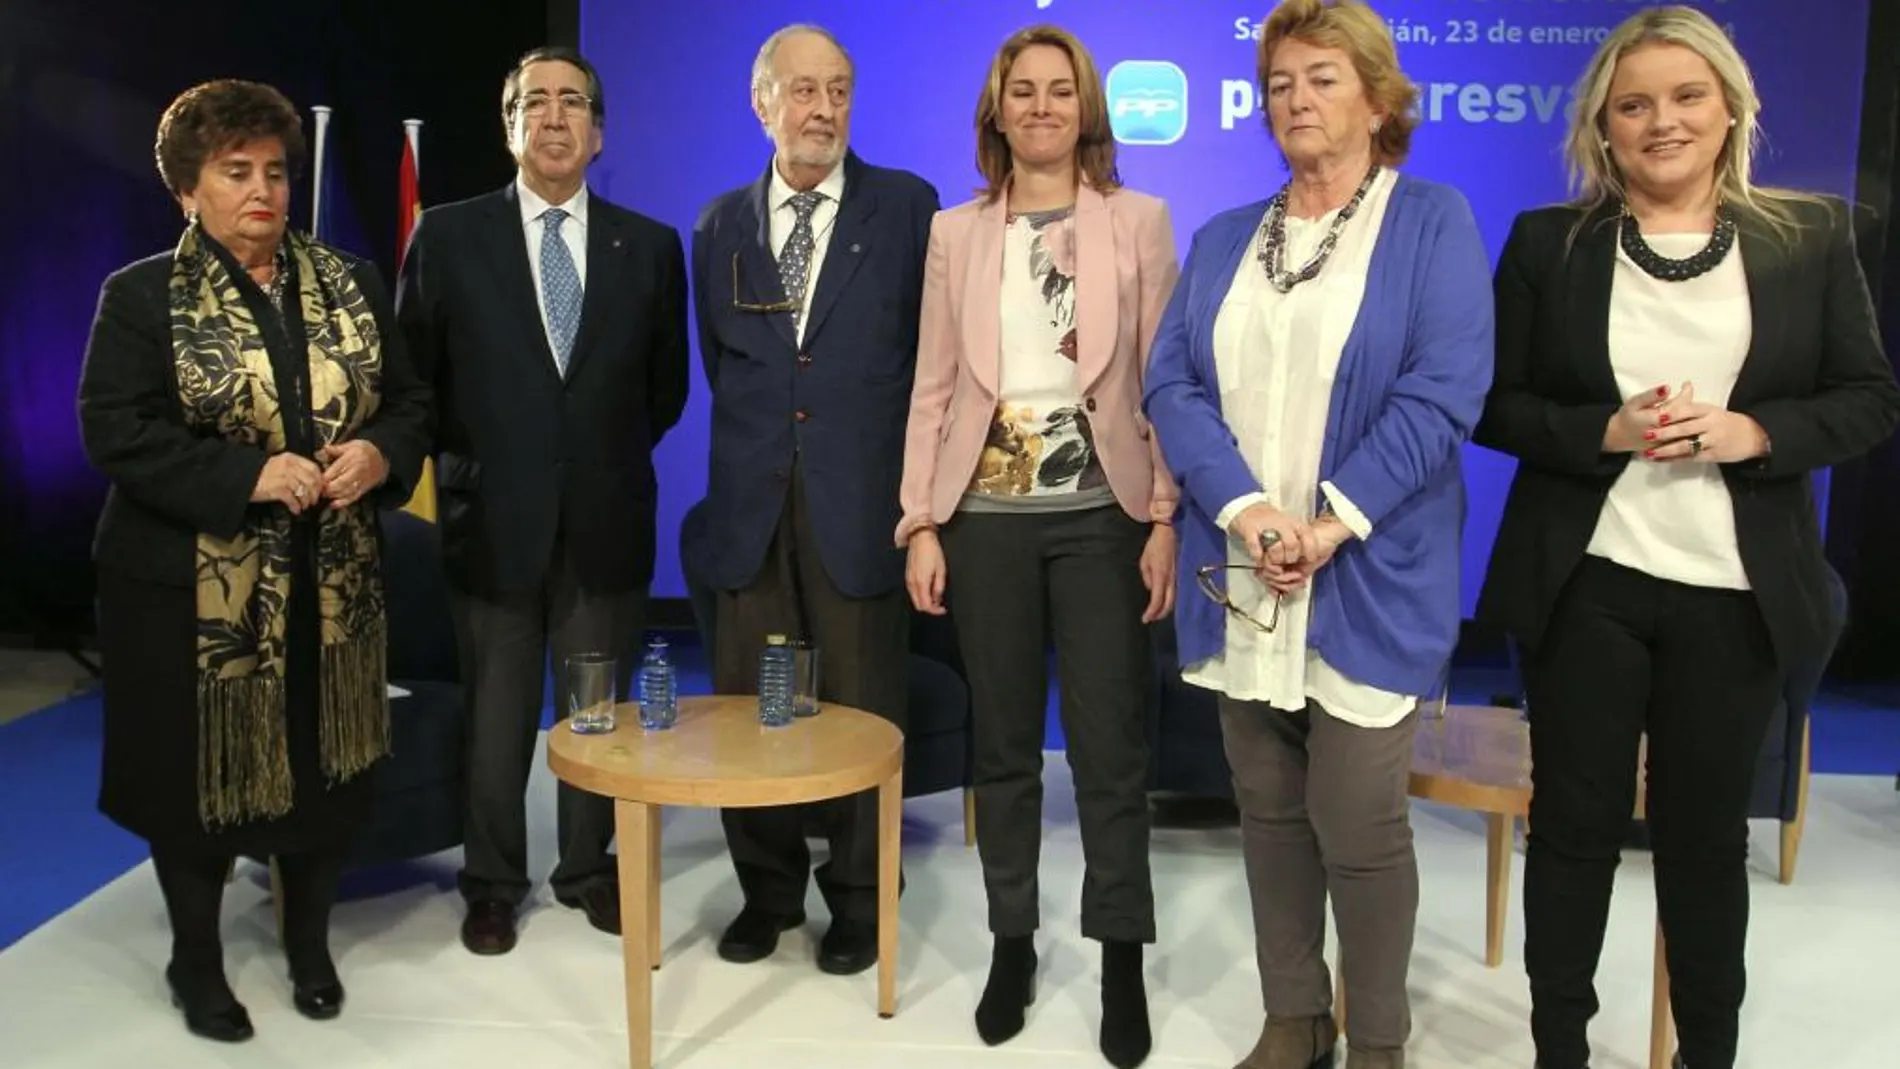 La presidenta del PP del País Vasco, Arantza Quiroga (3d), y la presidenta de la Fundación de Víctimas del Terrorismo, María del Mar Blanco (d), junto a Pilar Elías (i), Antonio Merino (2i), Alfredo Marco Tabar (3i), y María José Usandizaga (2d)